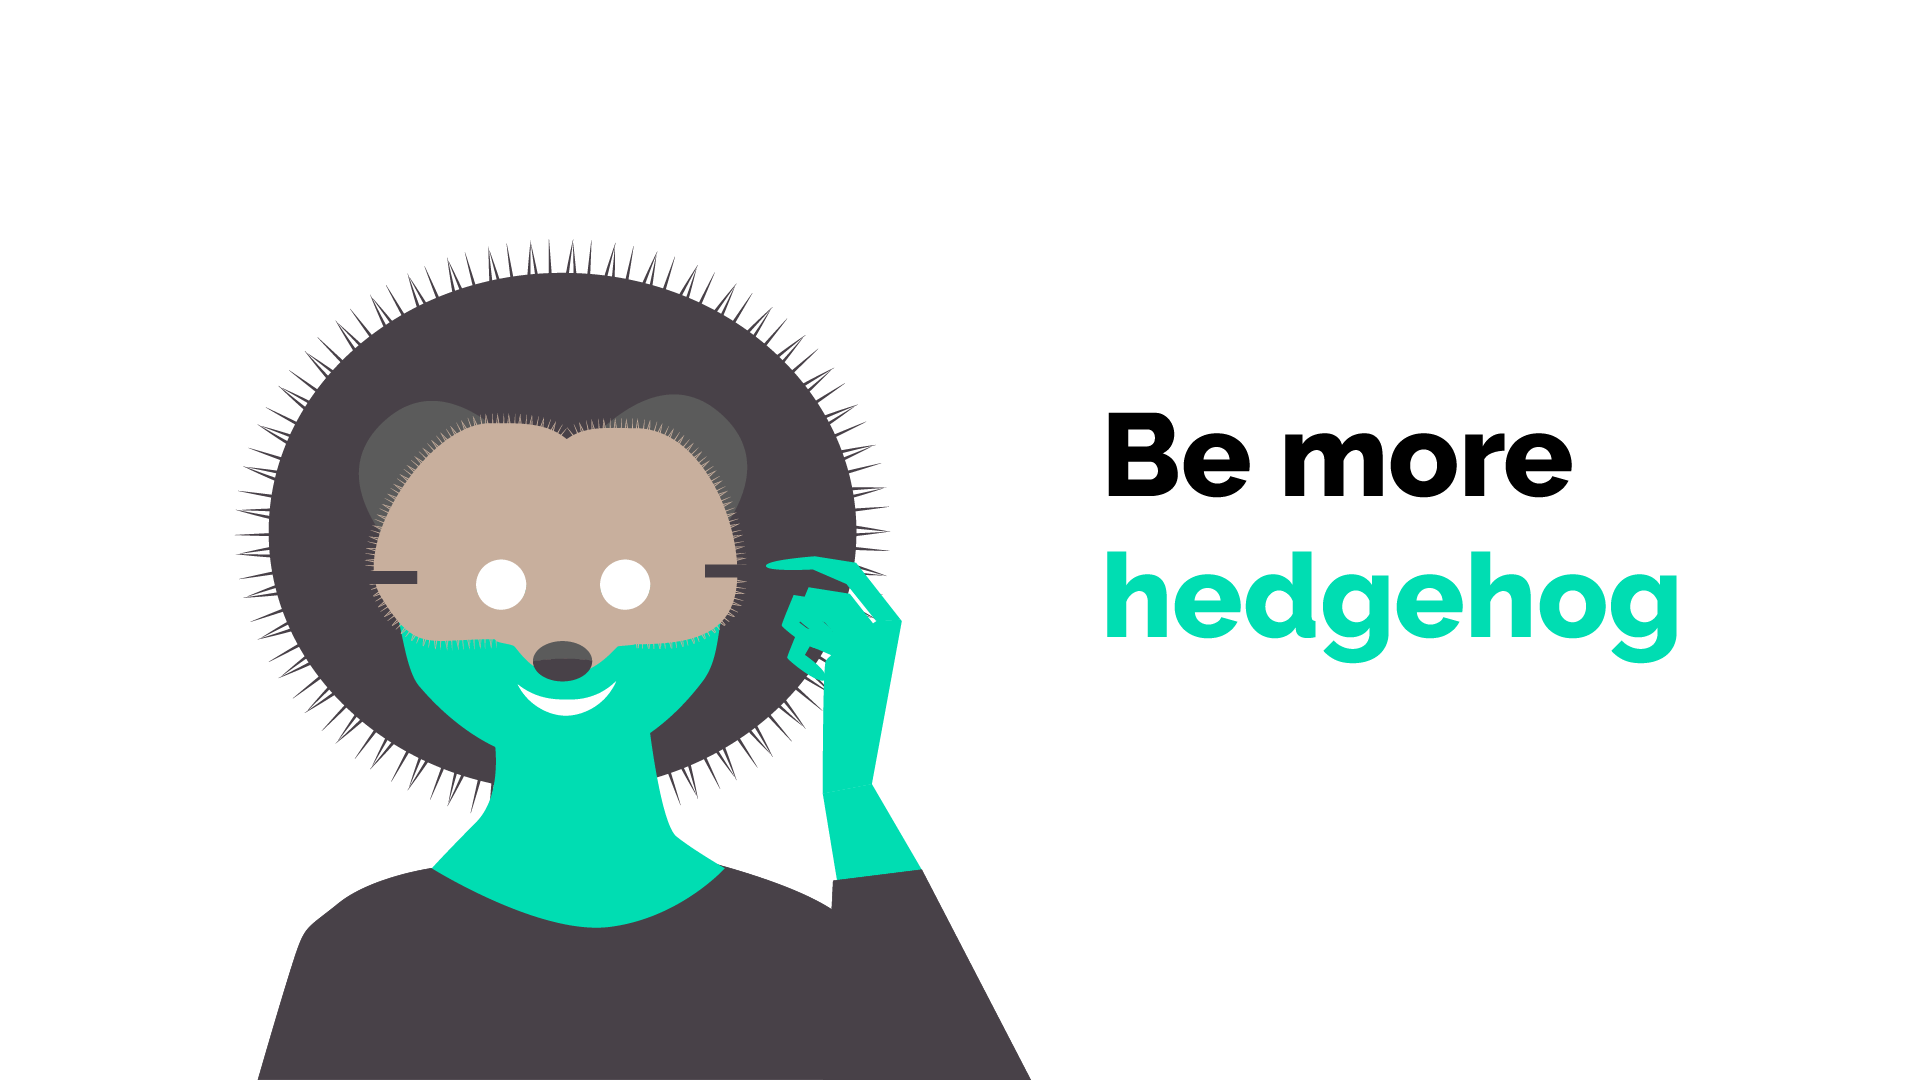 Be more hedgehog